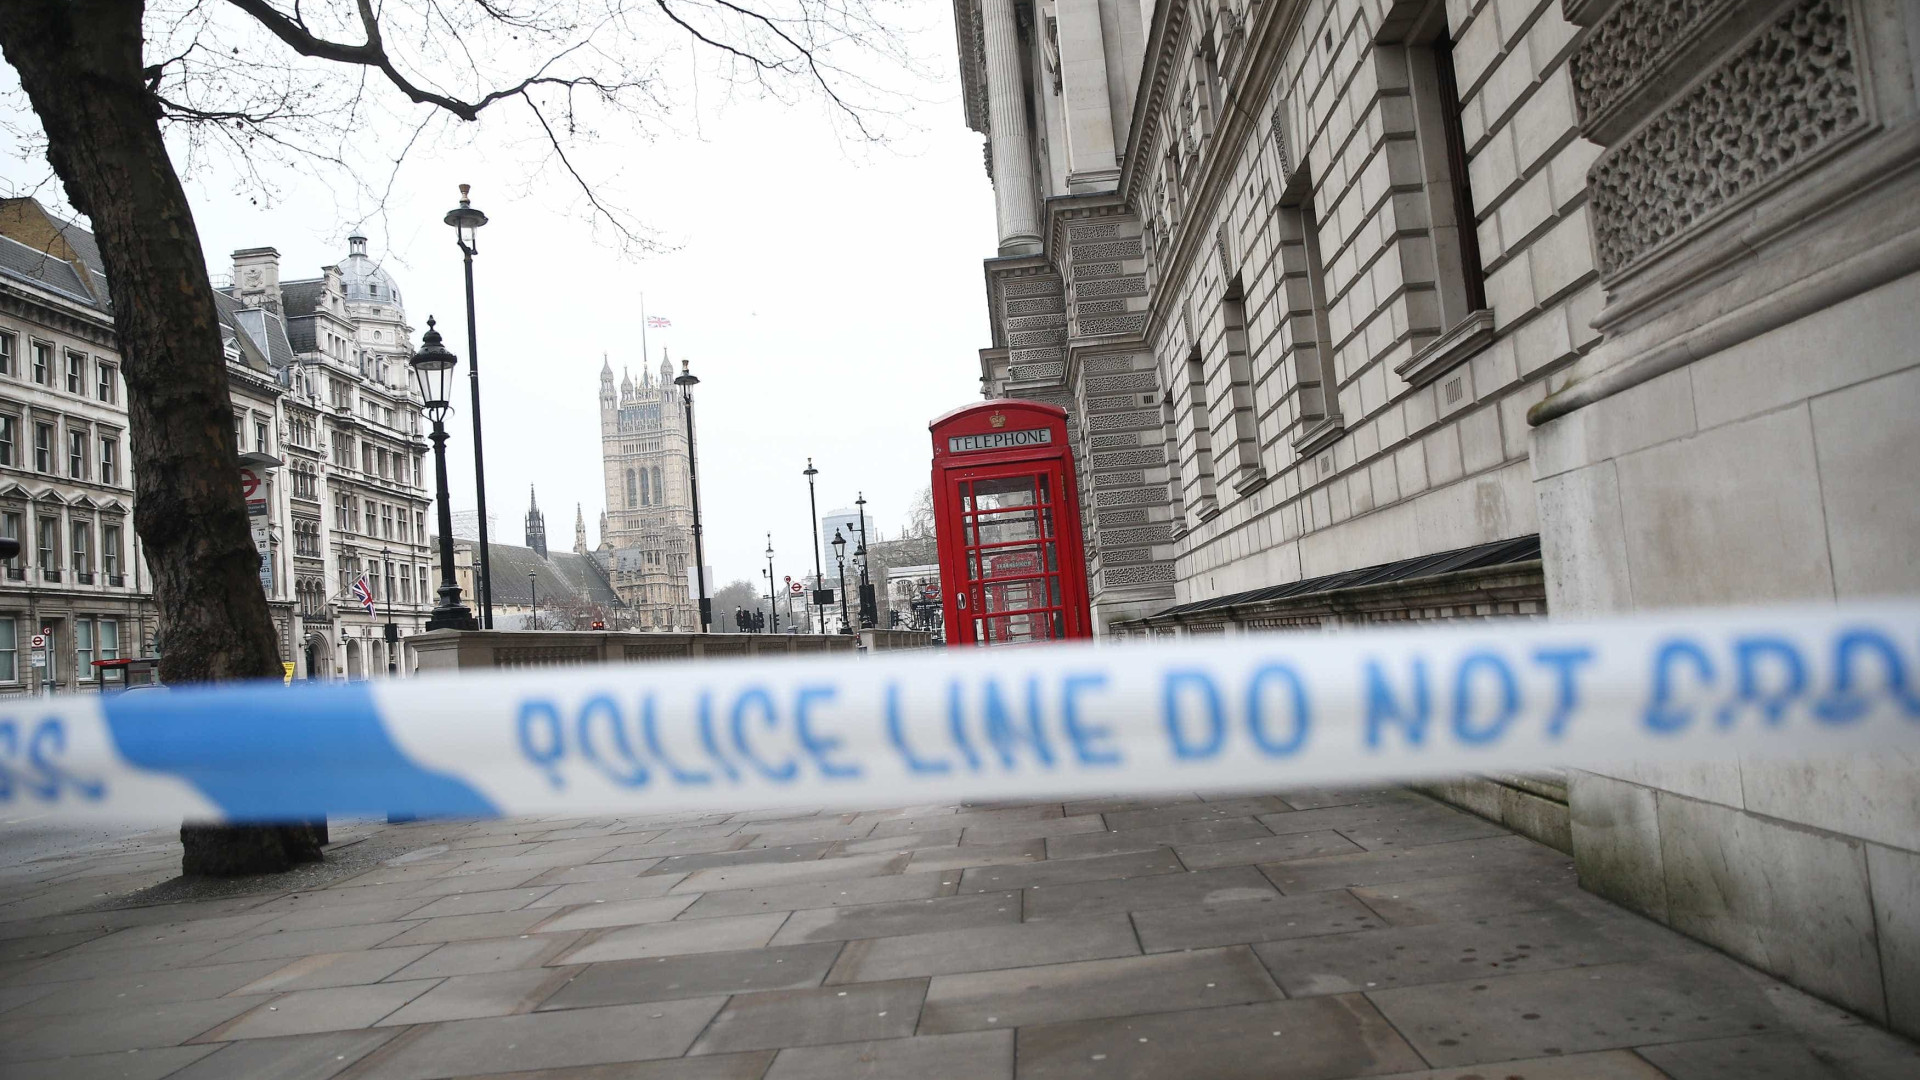 Oito suspeitos de ligação com atentado
em Londres são presos